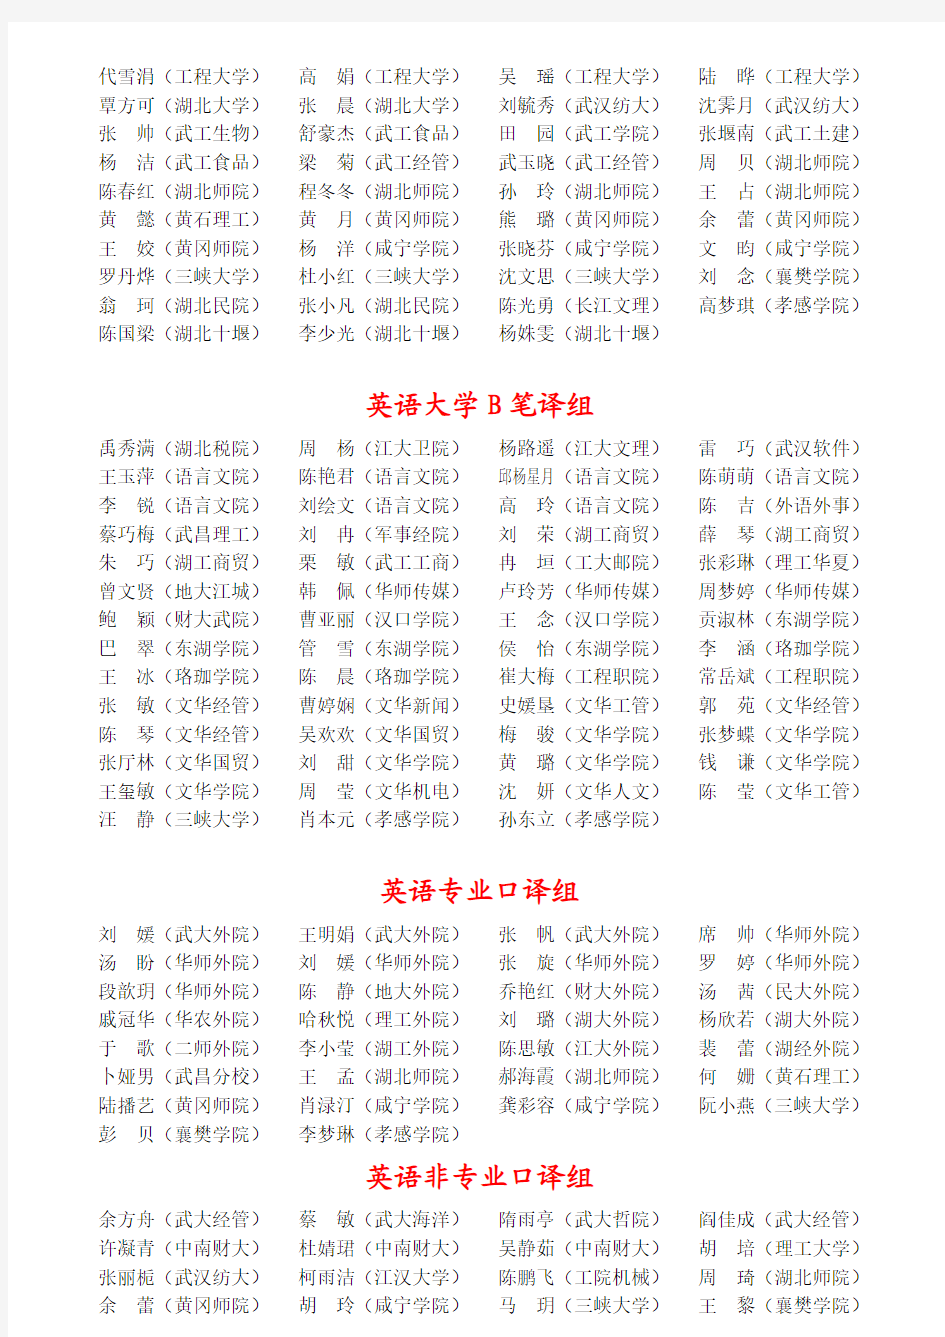 湖北省第十八届外语翻译大赛获奖名单